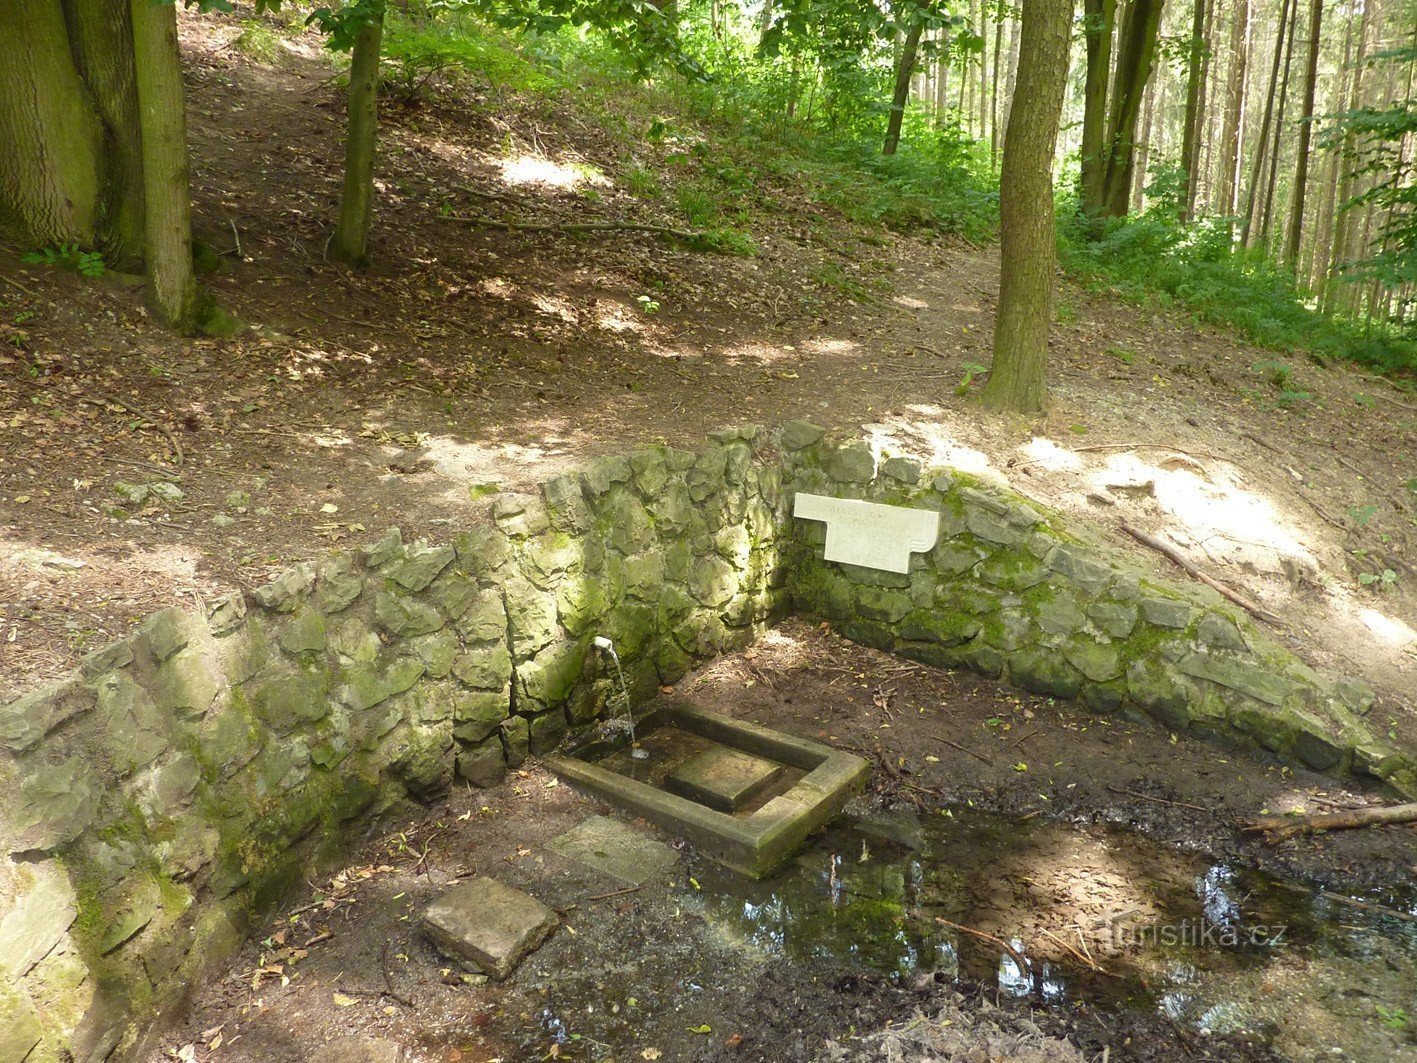 Tomečka's well